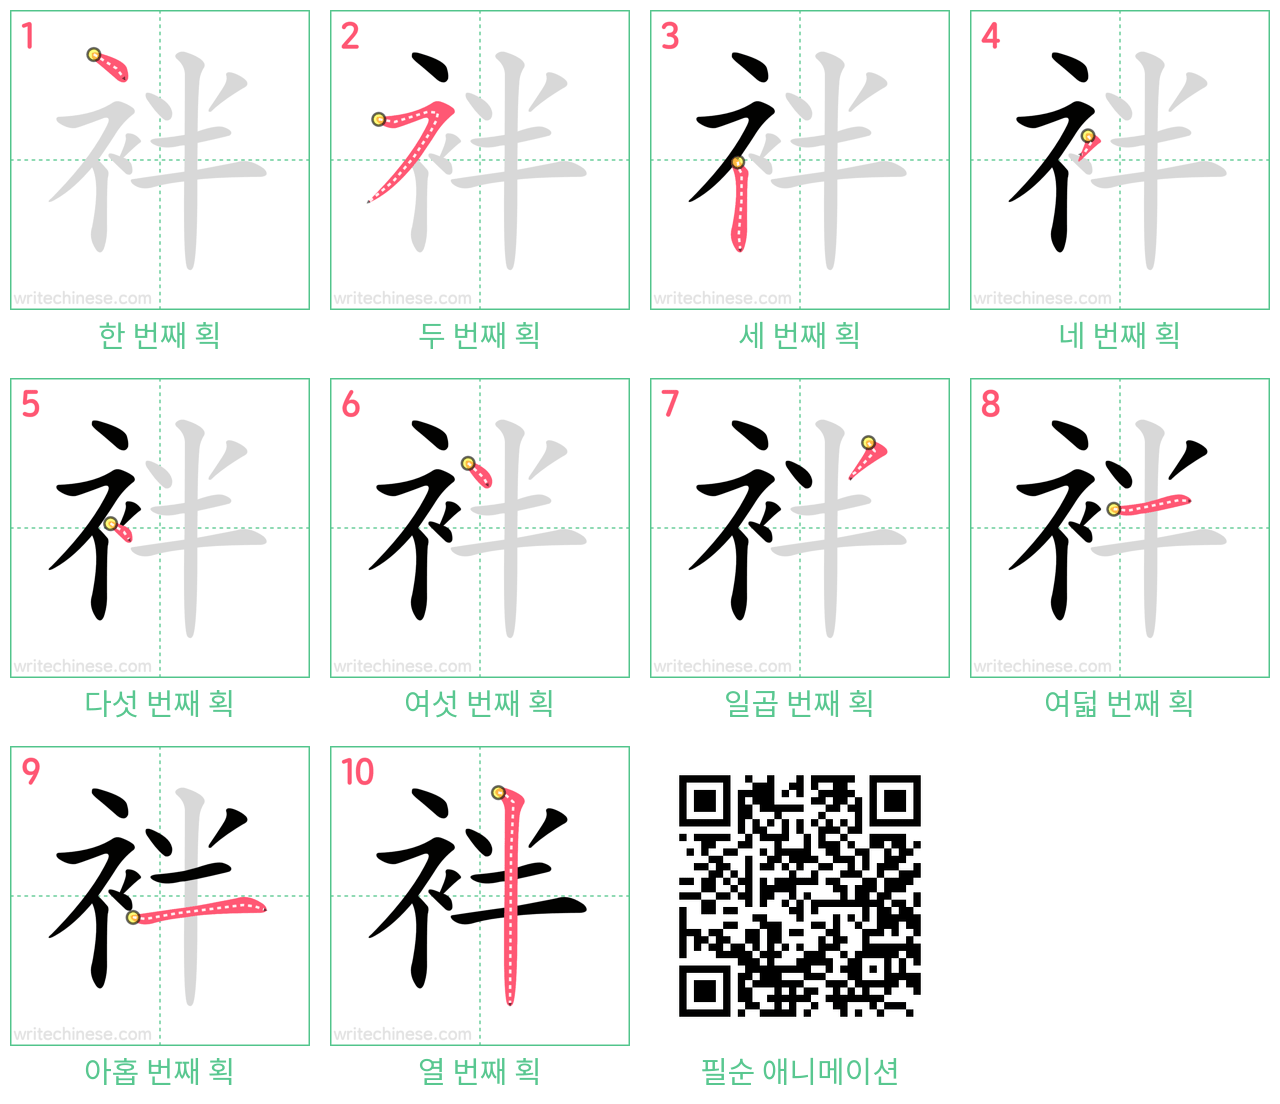 袢 step-by-step stroke order diagrams